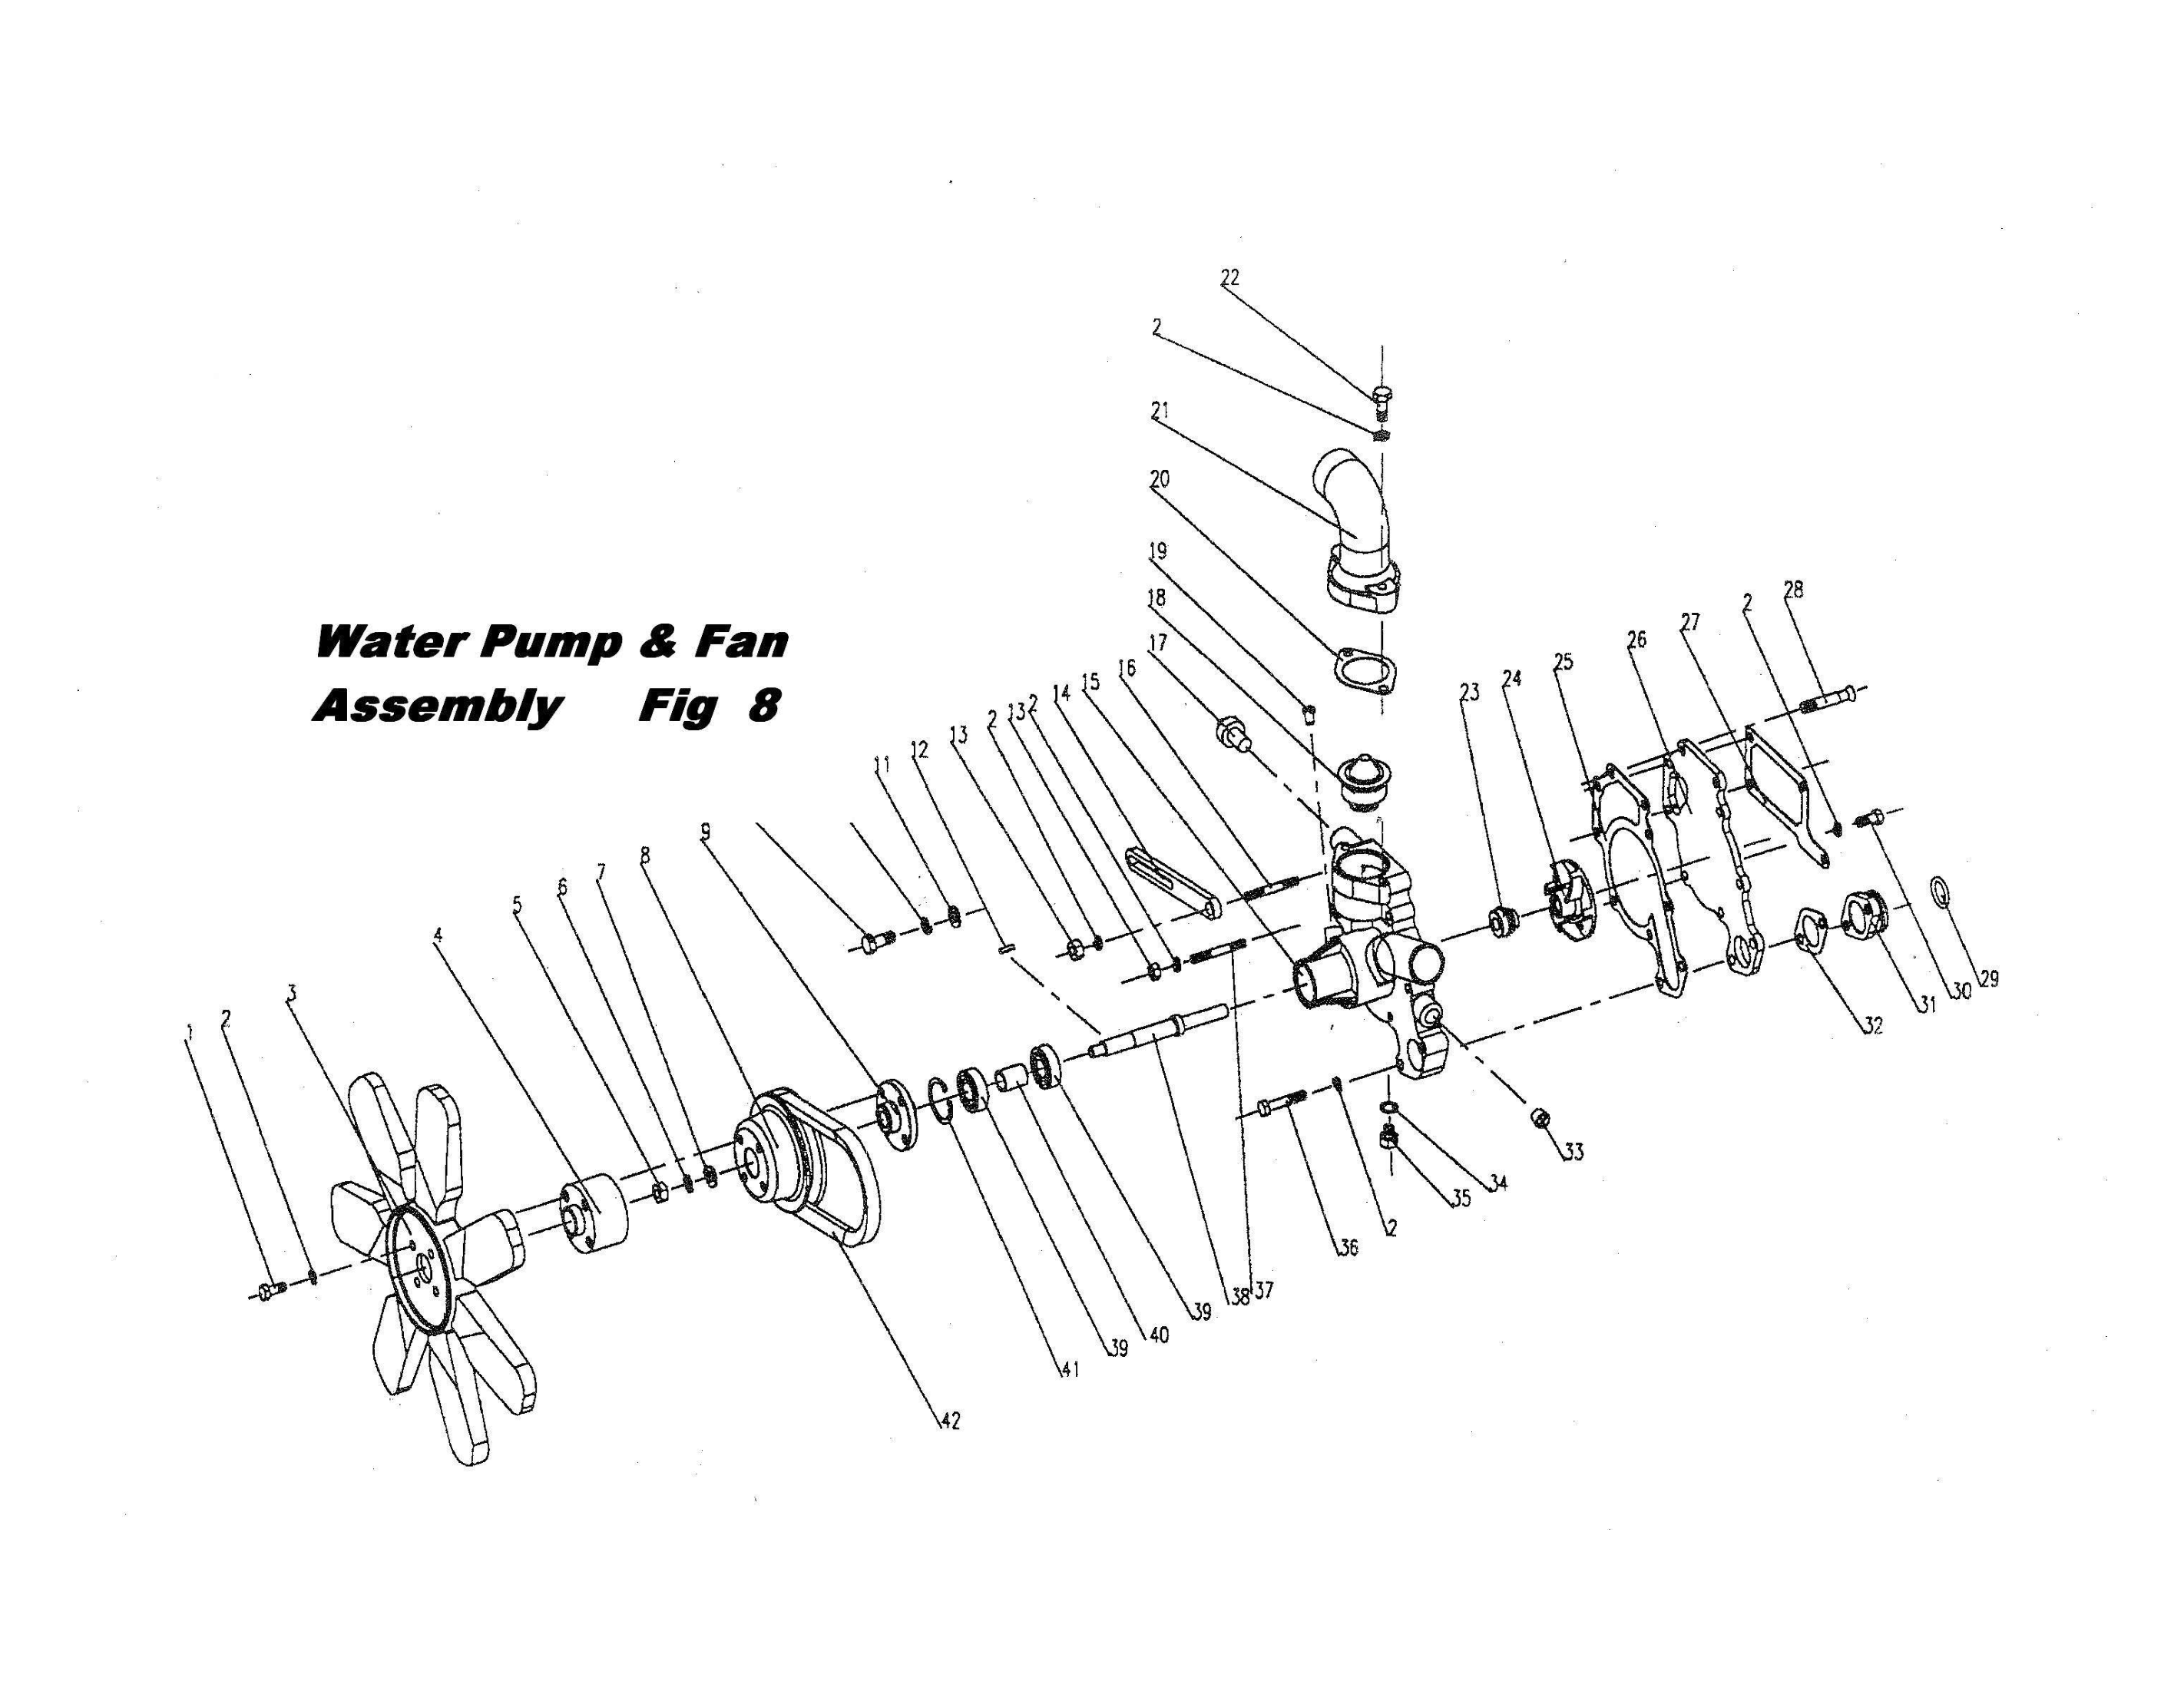 Water Pump & Fan Assembly